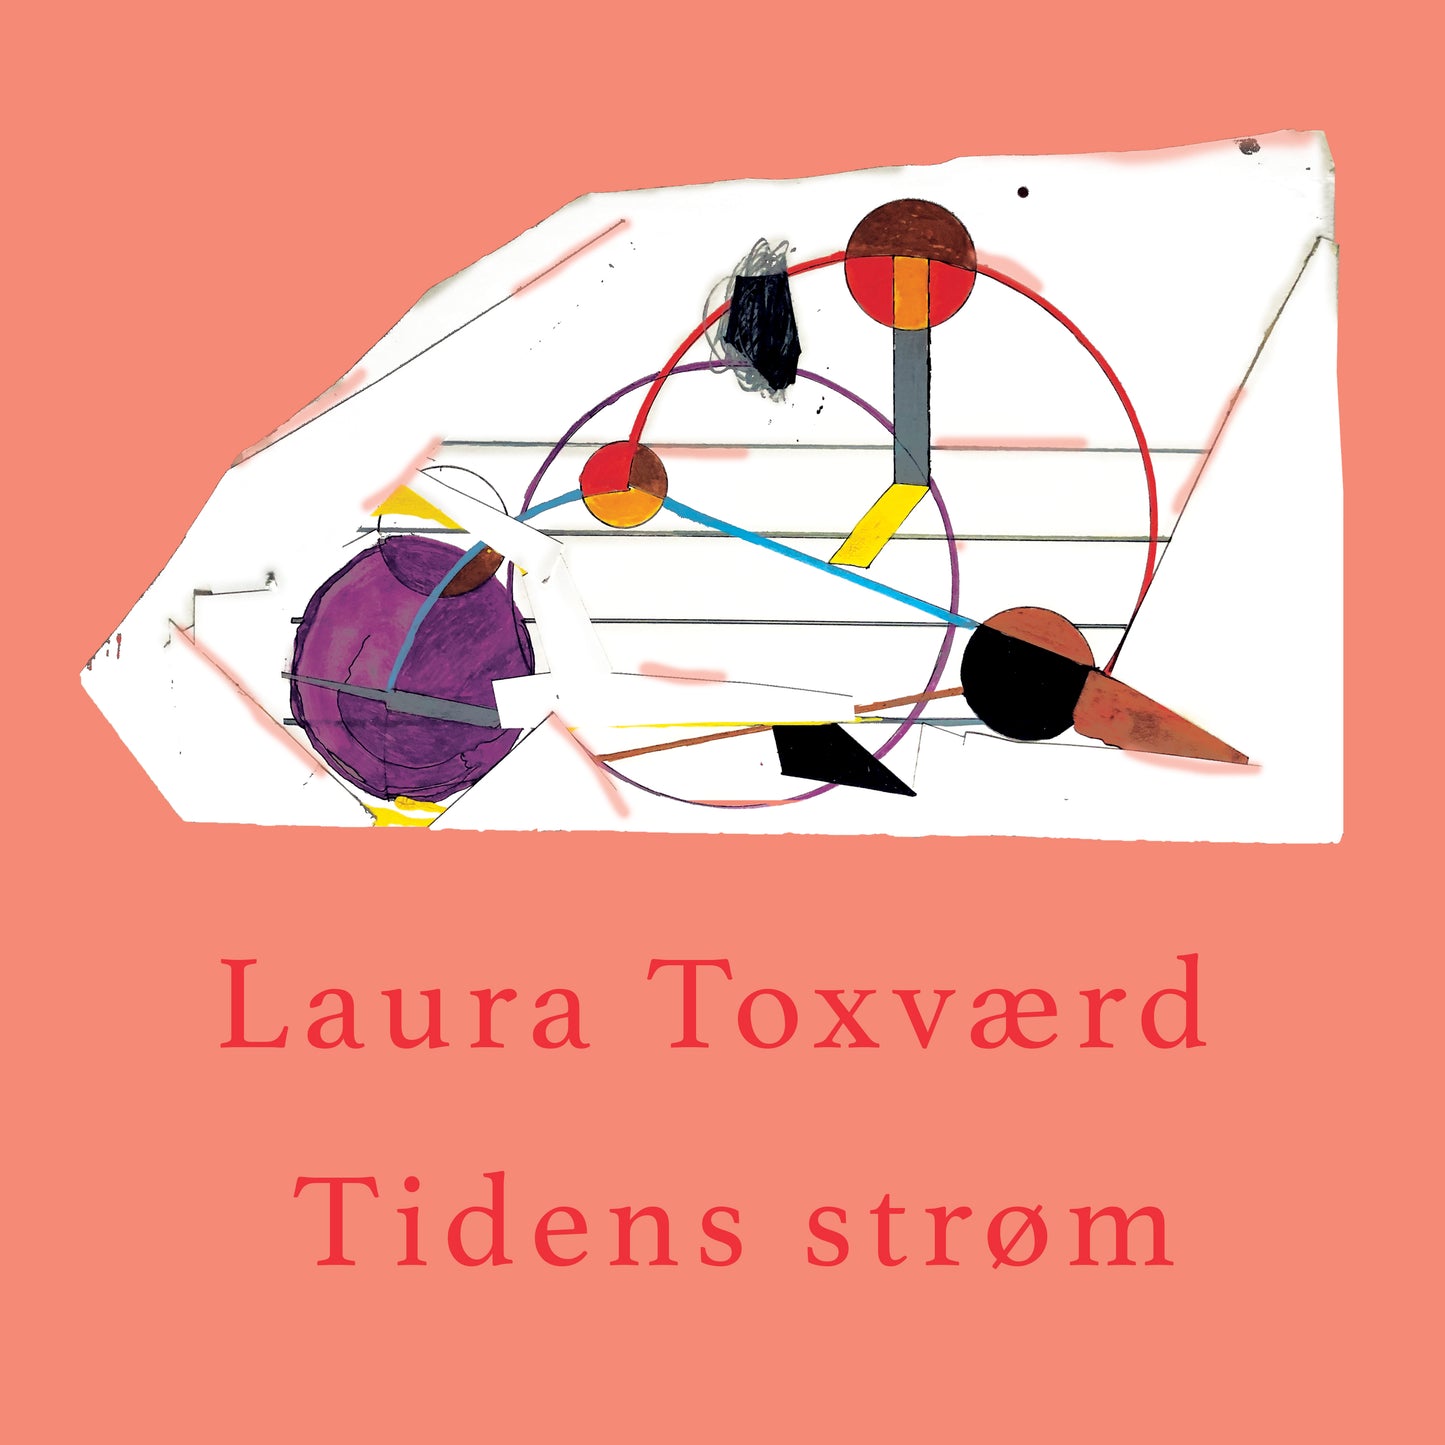 Laura Toxværd: Tidens strøm